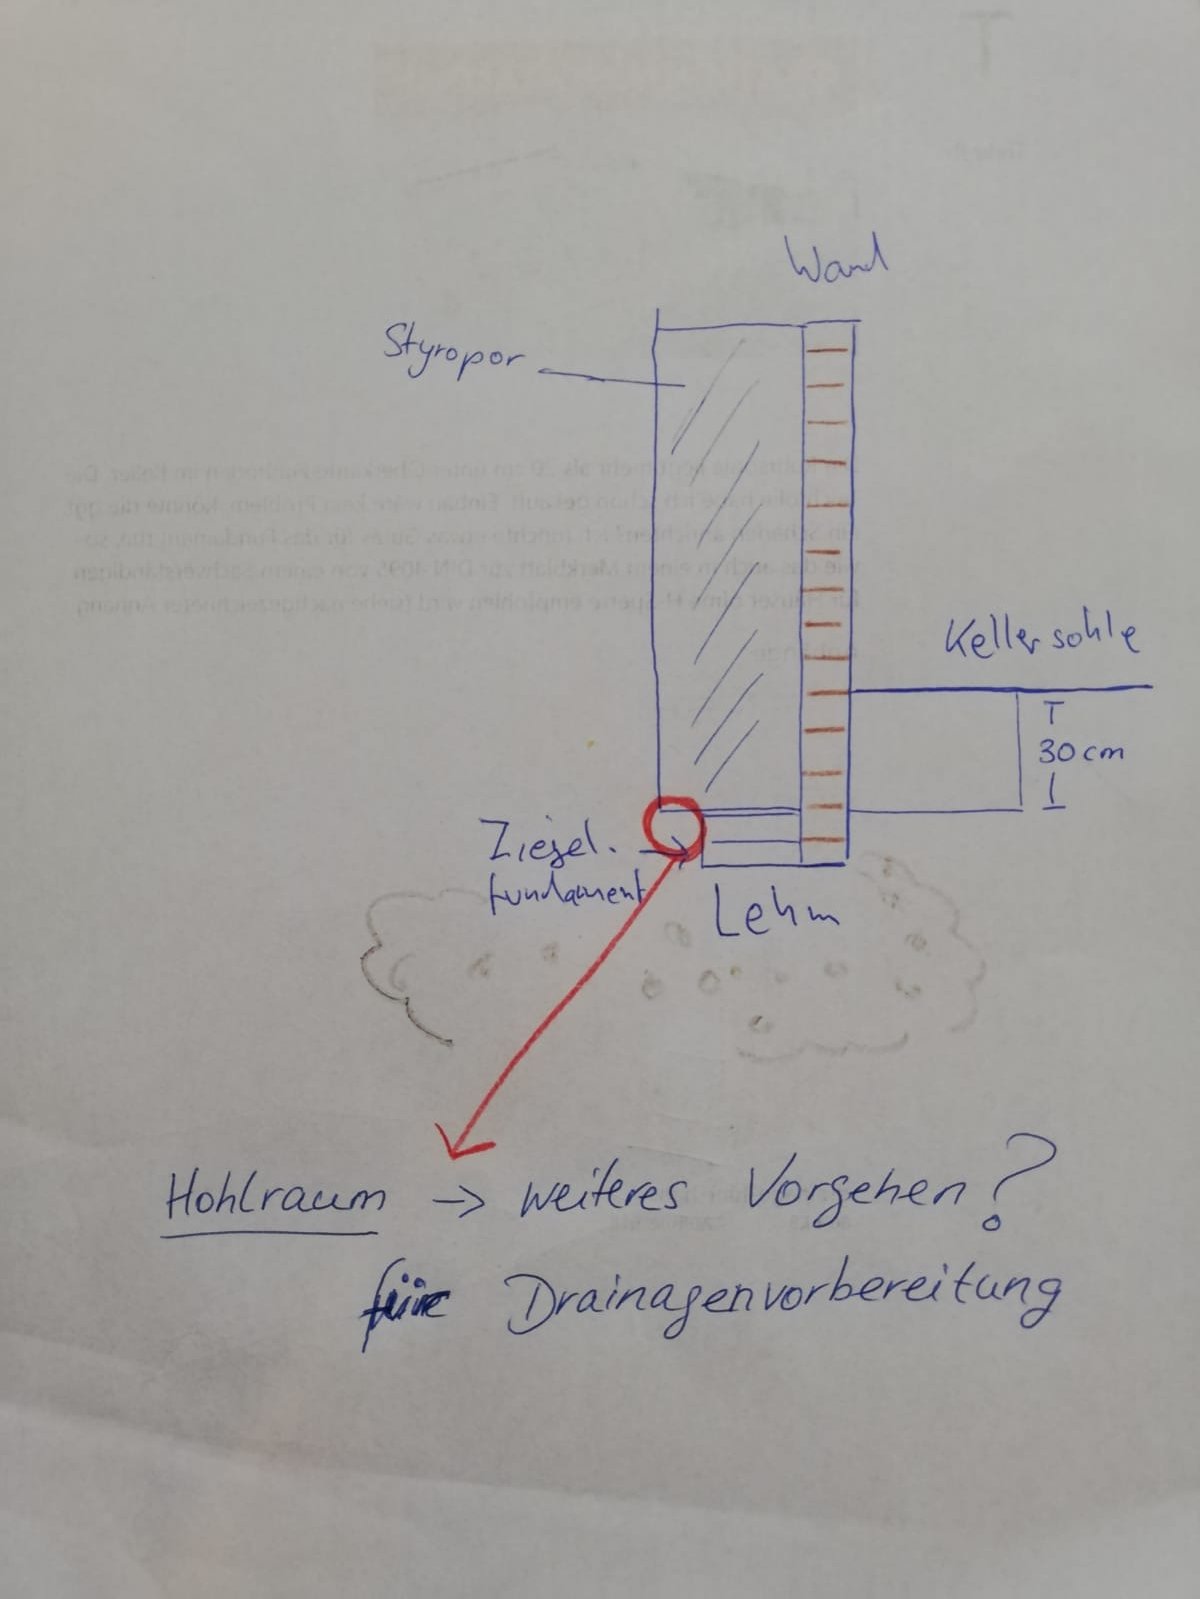 kellerabdichtung-drainage-bei-lehmboden-und-ziegelfundament-493201-1.jpg